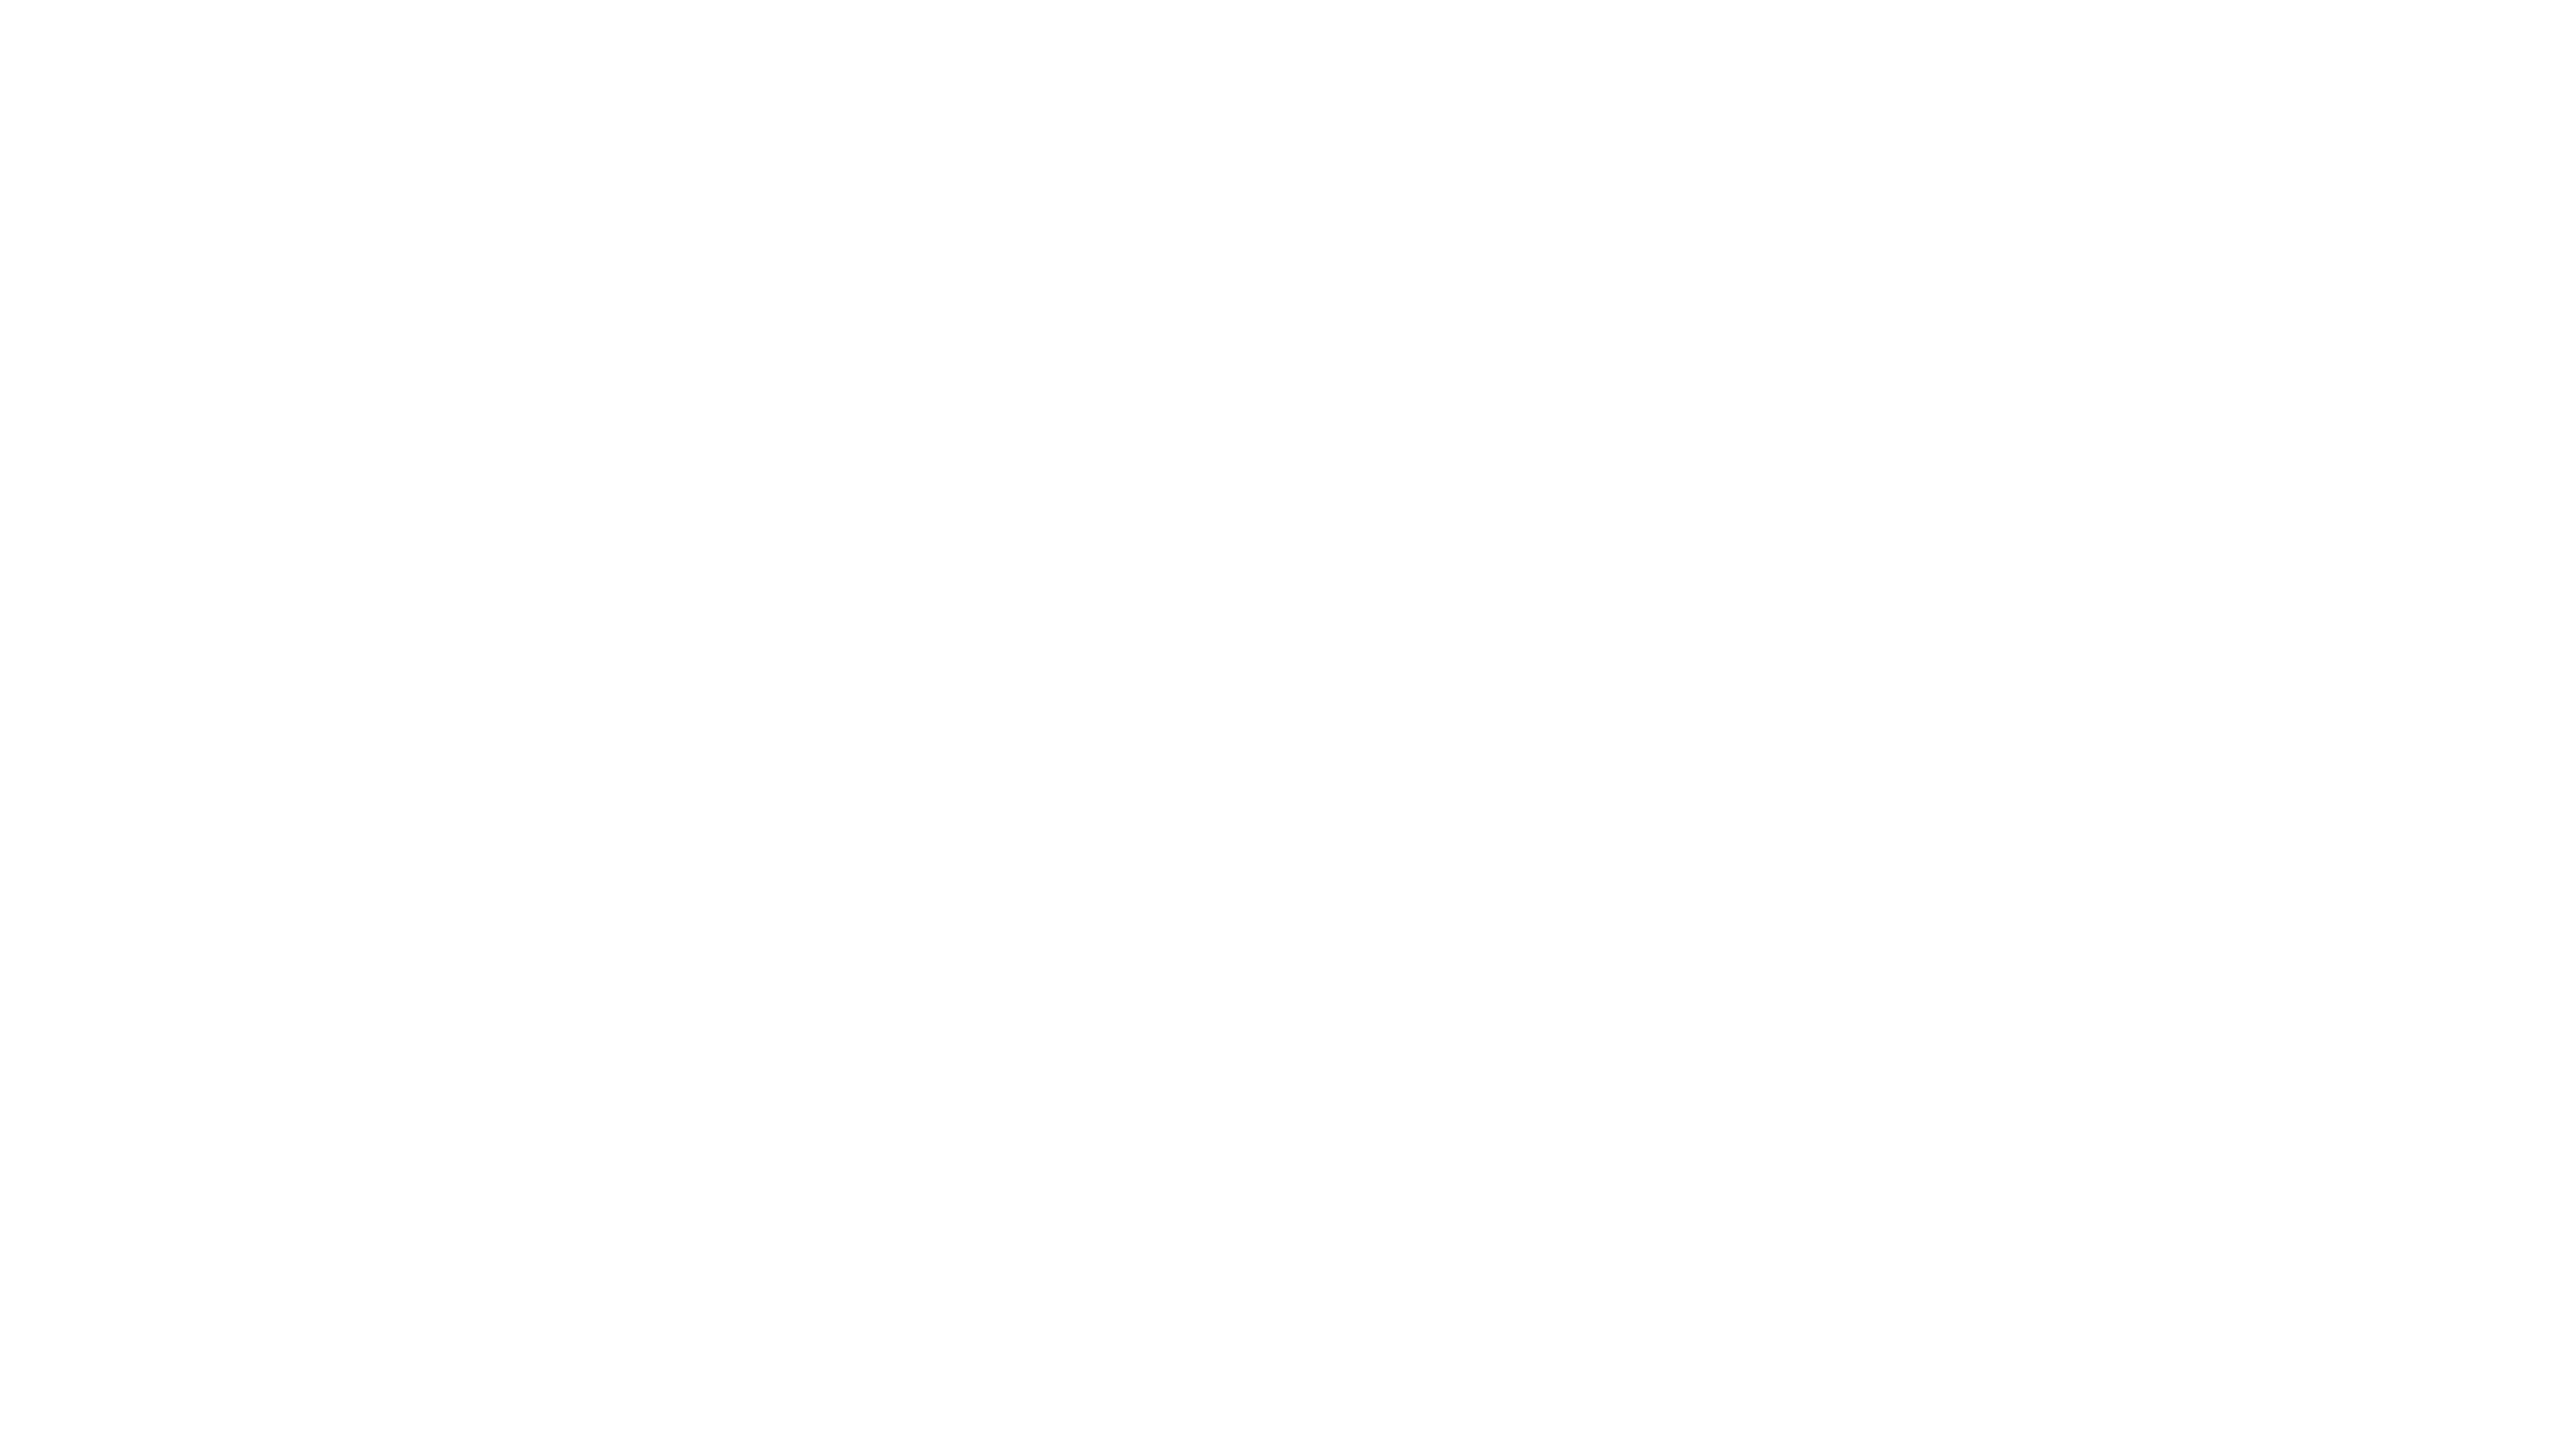 Shanna Kane